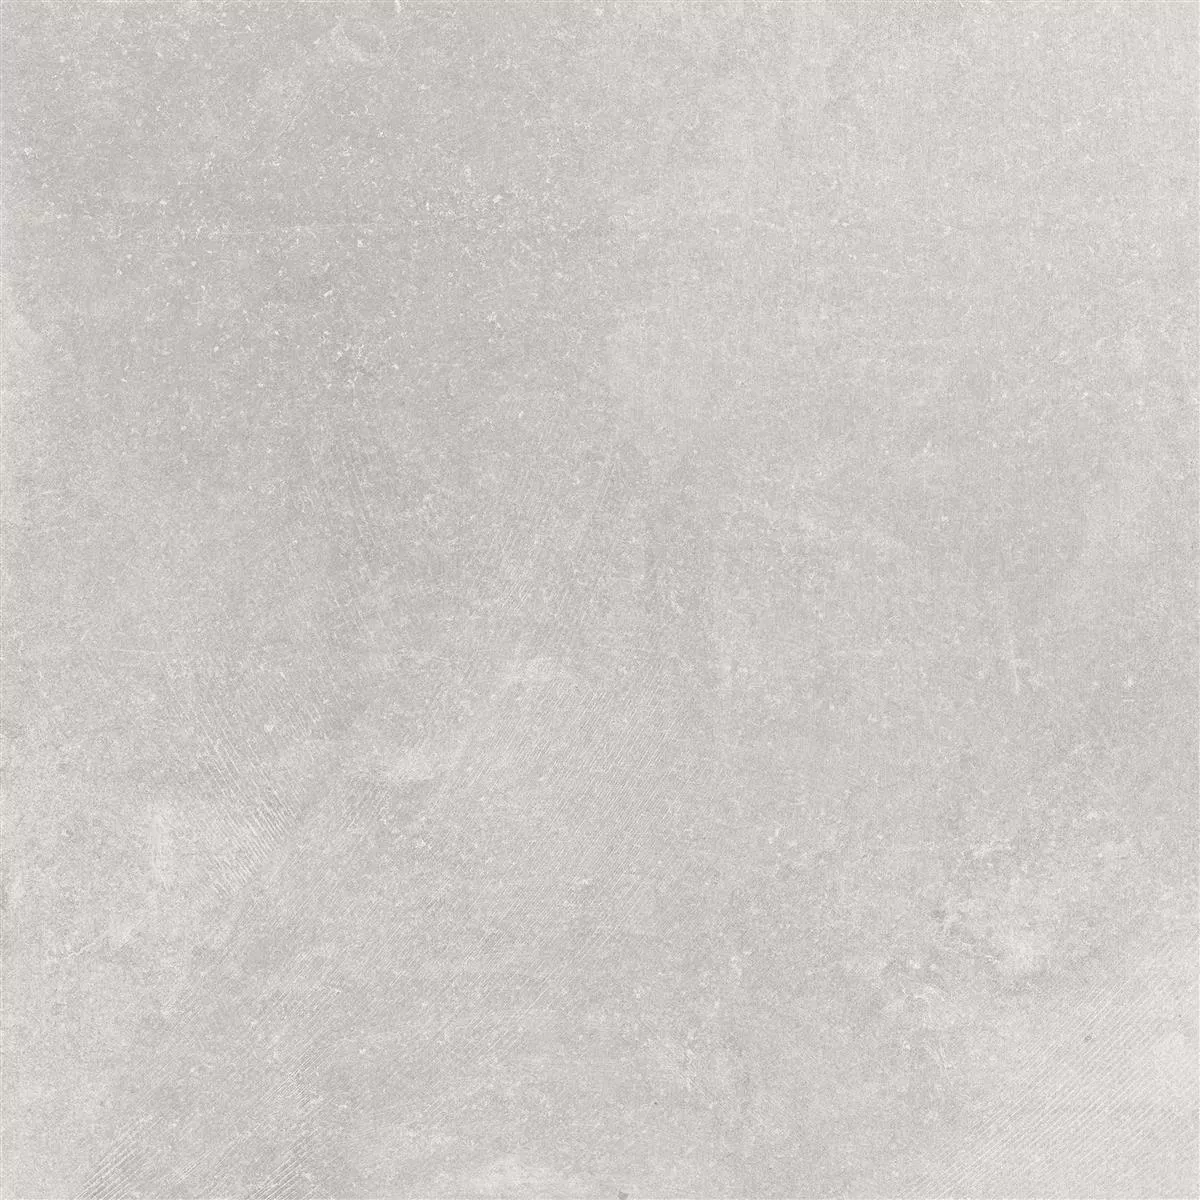 Πρότυπο Πλακάκια Δαπέδου Πέτρινη Όψη Horizon Γκρί 60x60cm